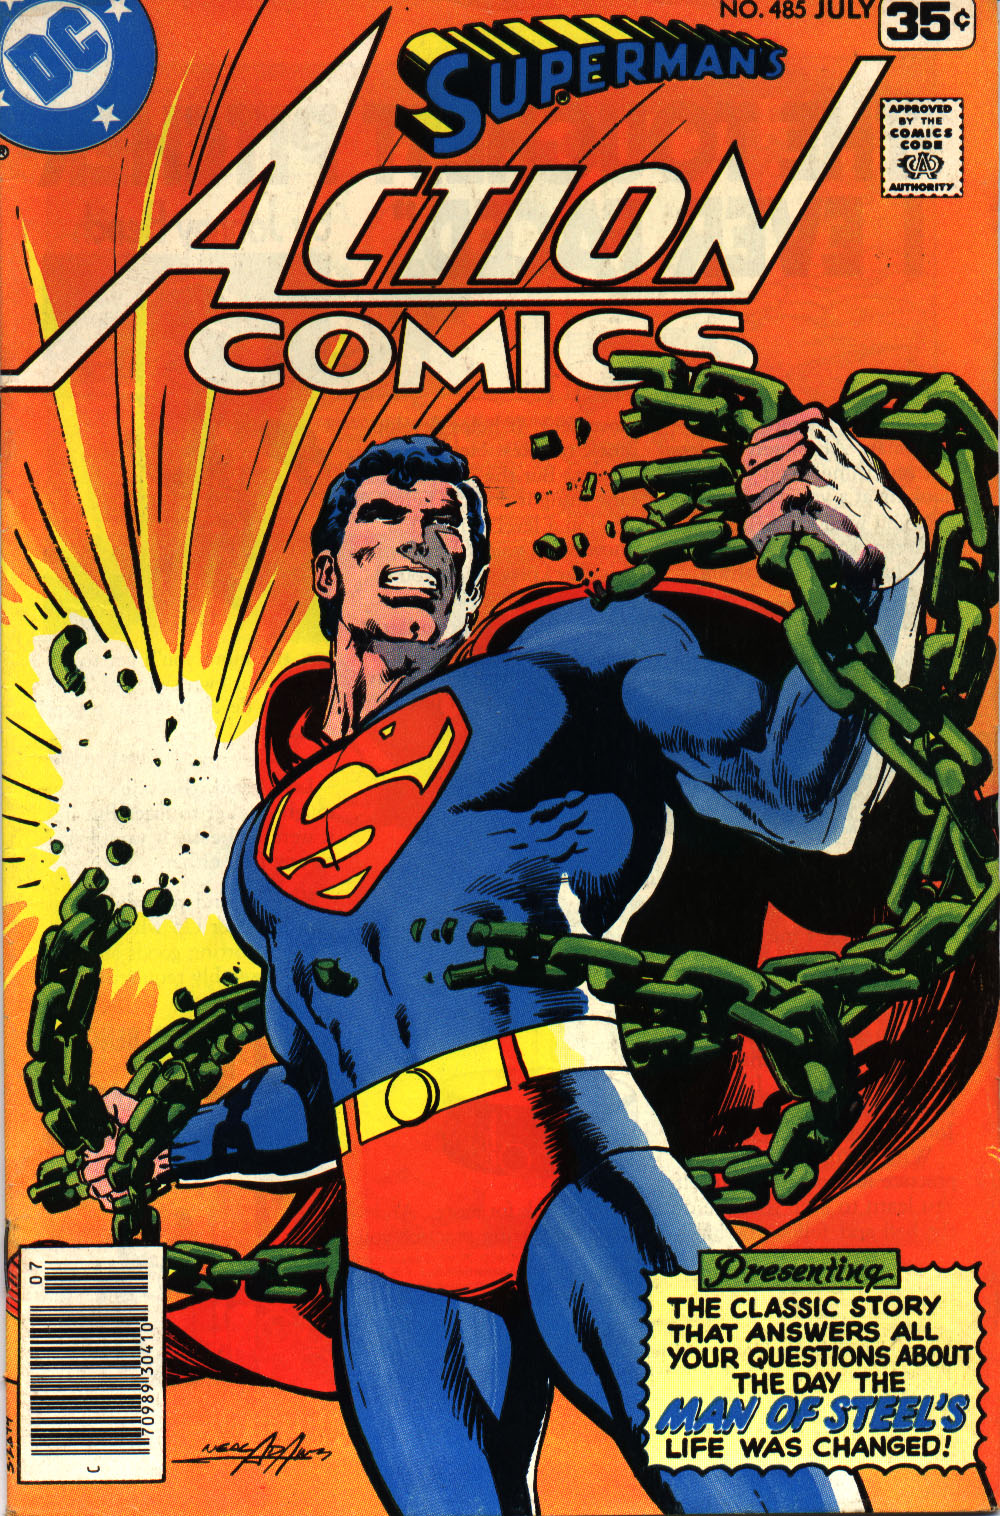 Action Comics Vol. 1 #485